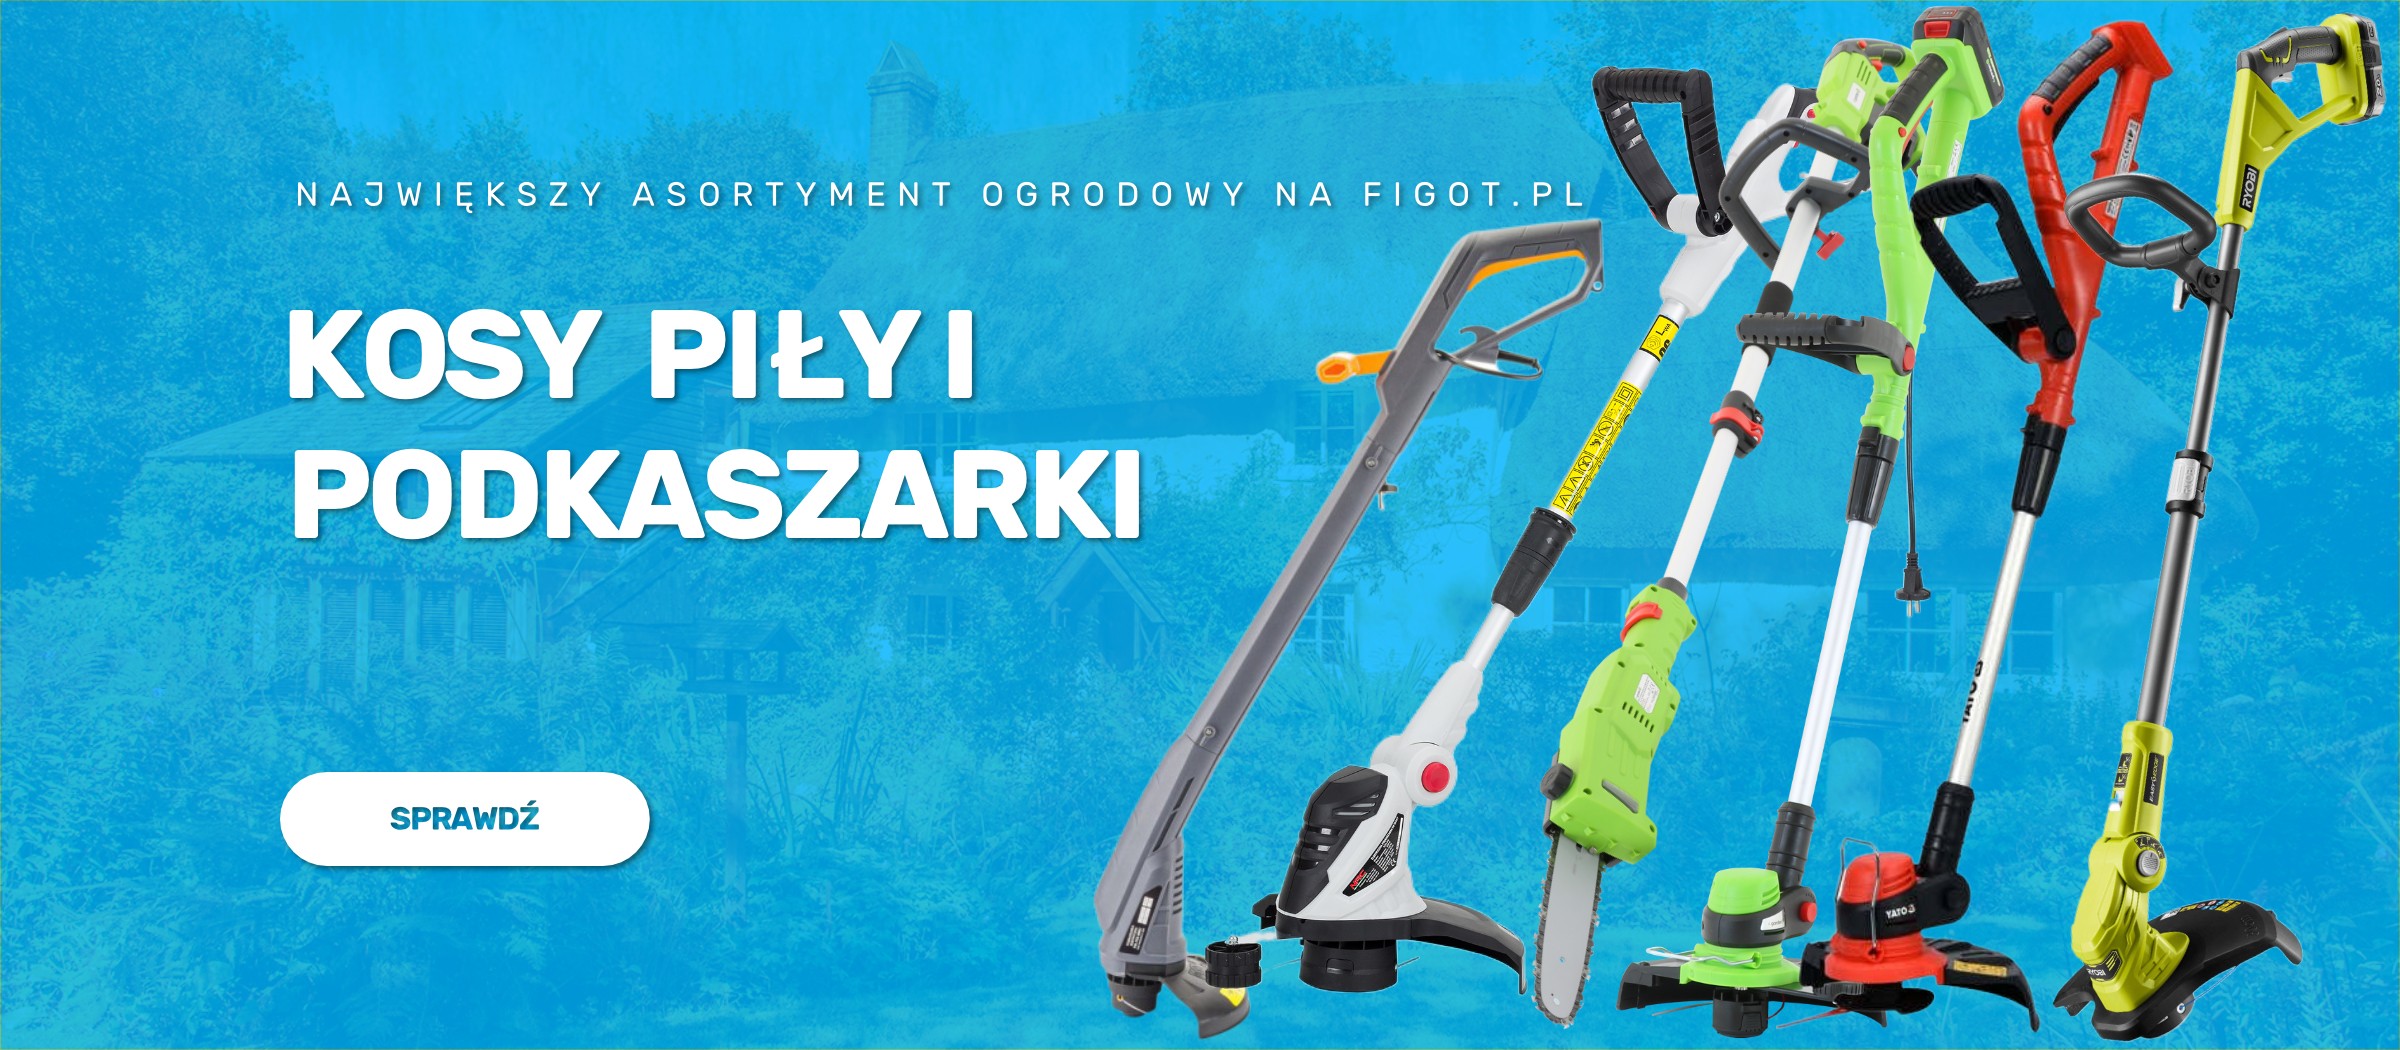 KOSY PIŁY I PODKASZARKI - Największy asortyment ogrodowy na Figot.pl